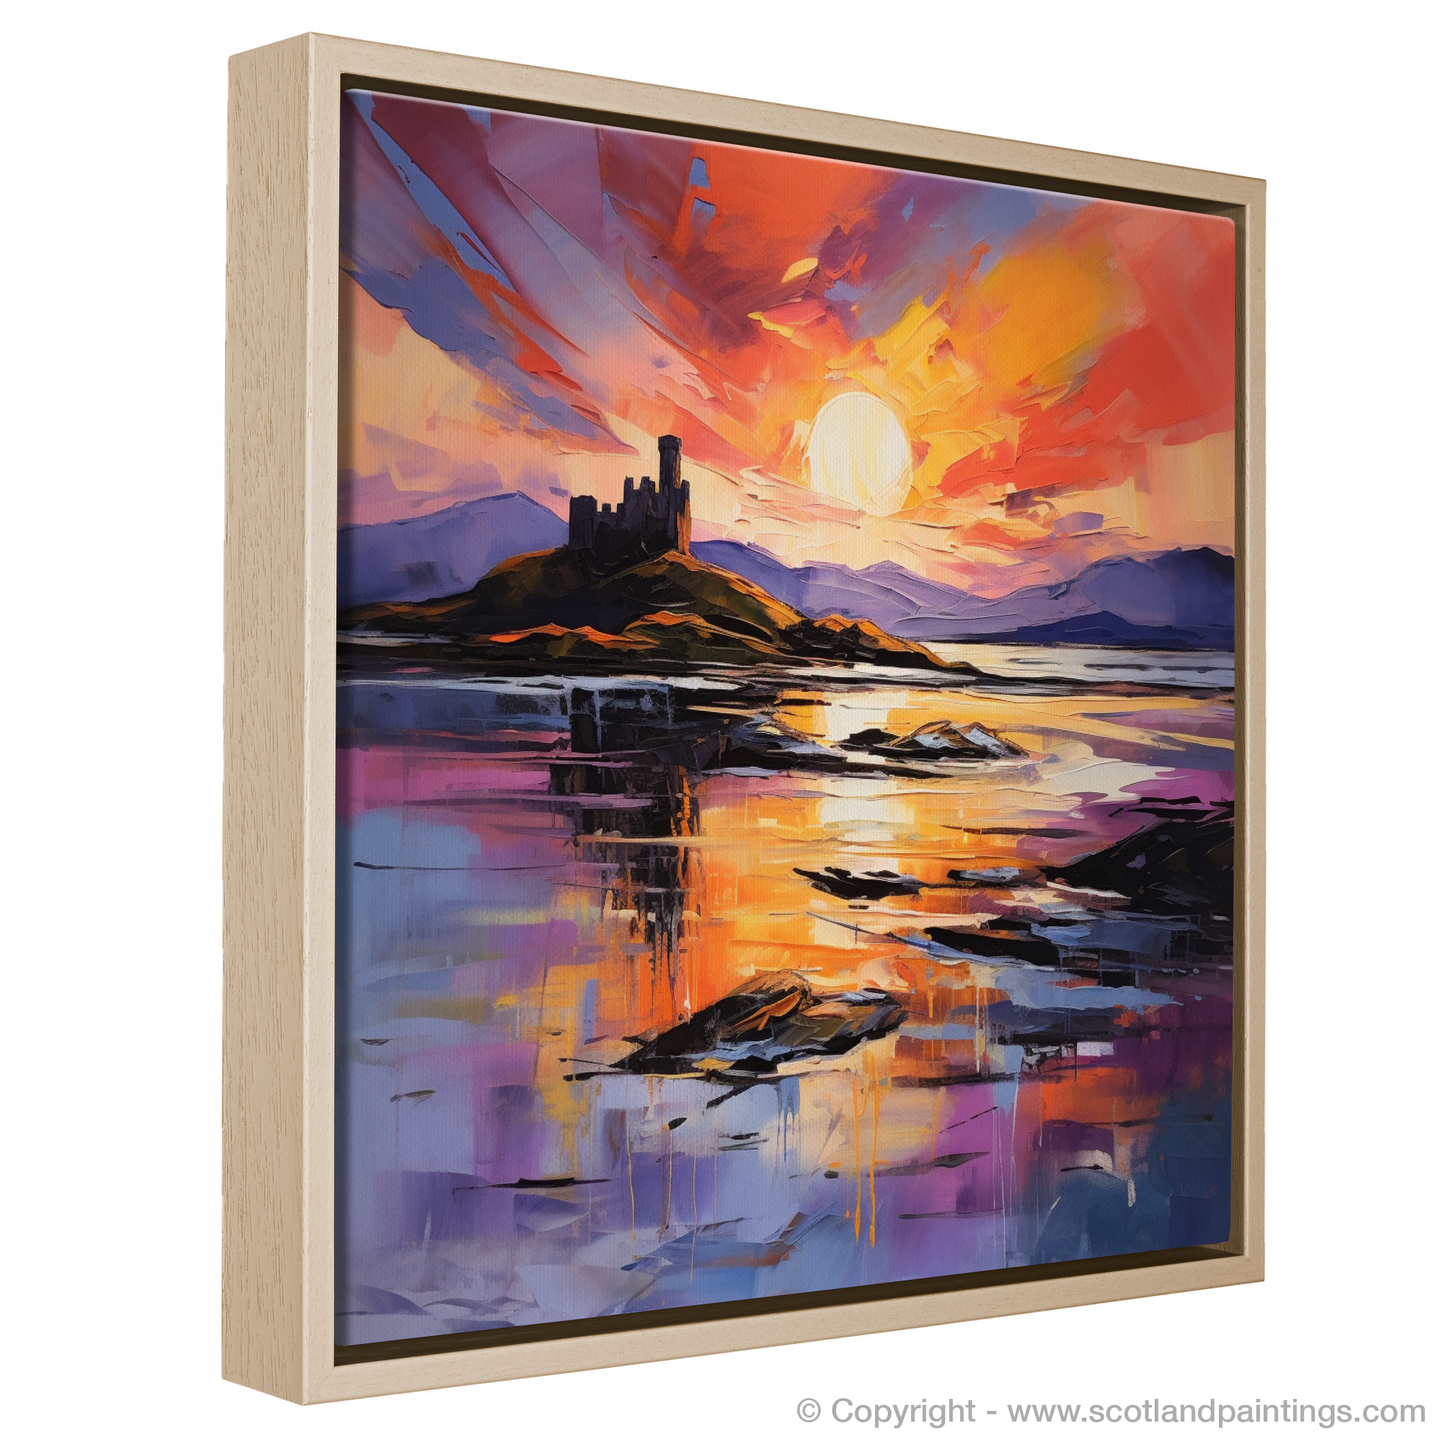 Painting and Art Print of Castle Stalker Bay at sunset entitled "Sunset Embrace at Castle Stalker Bay".